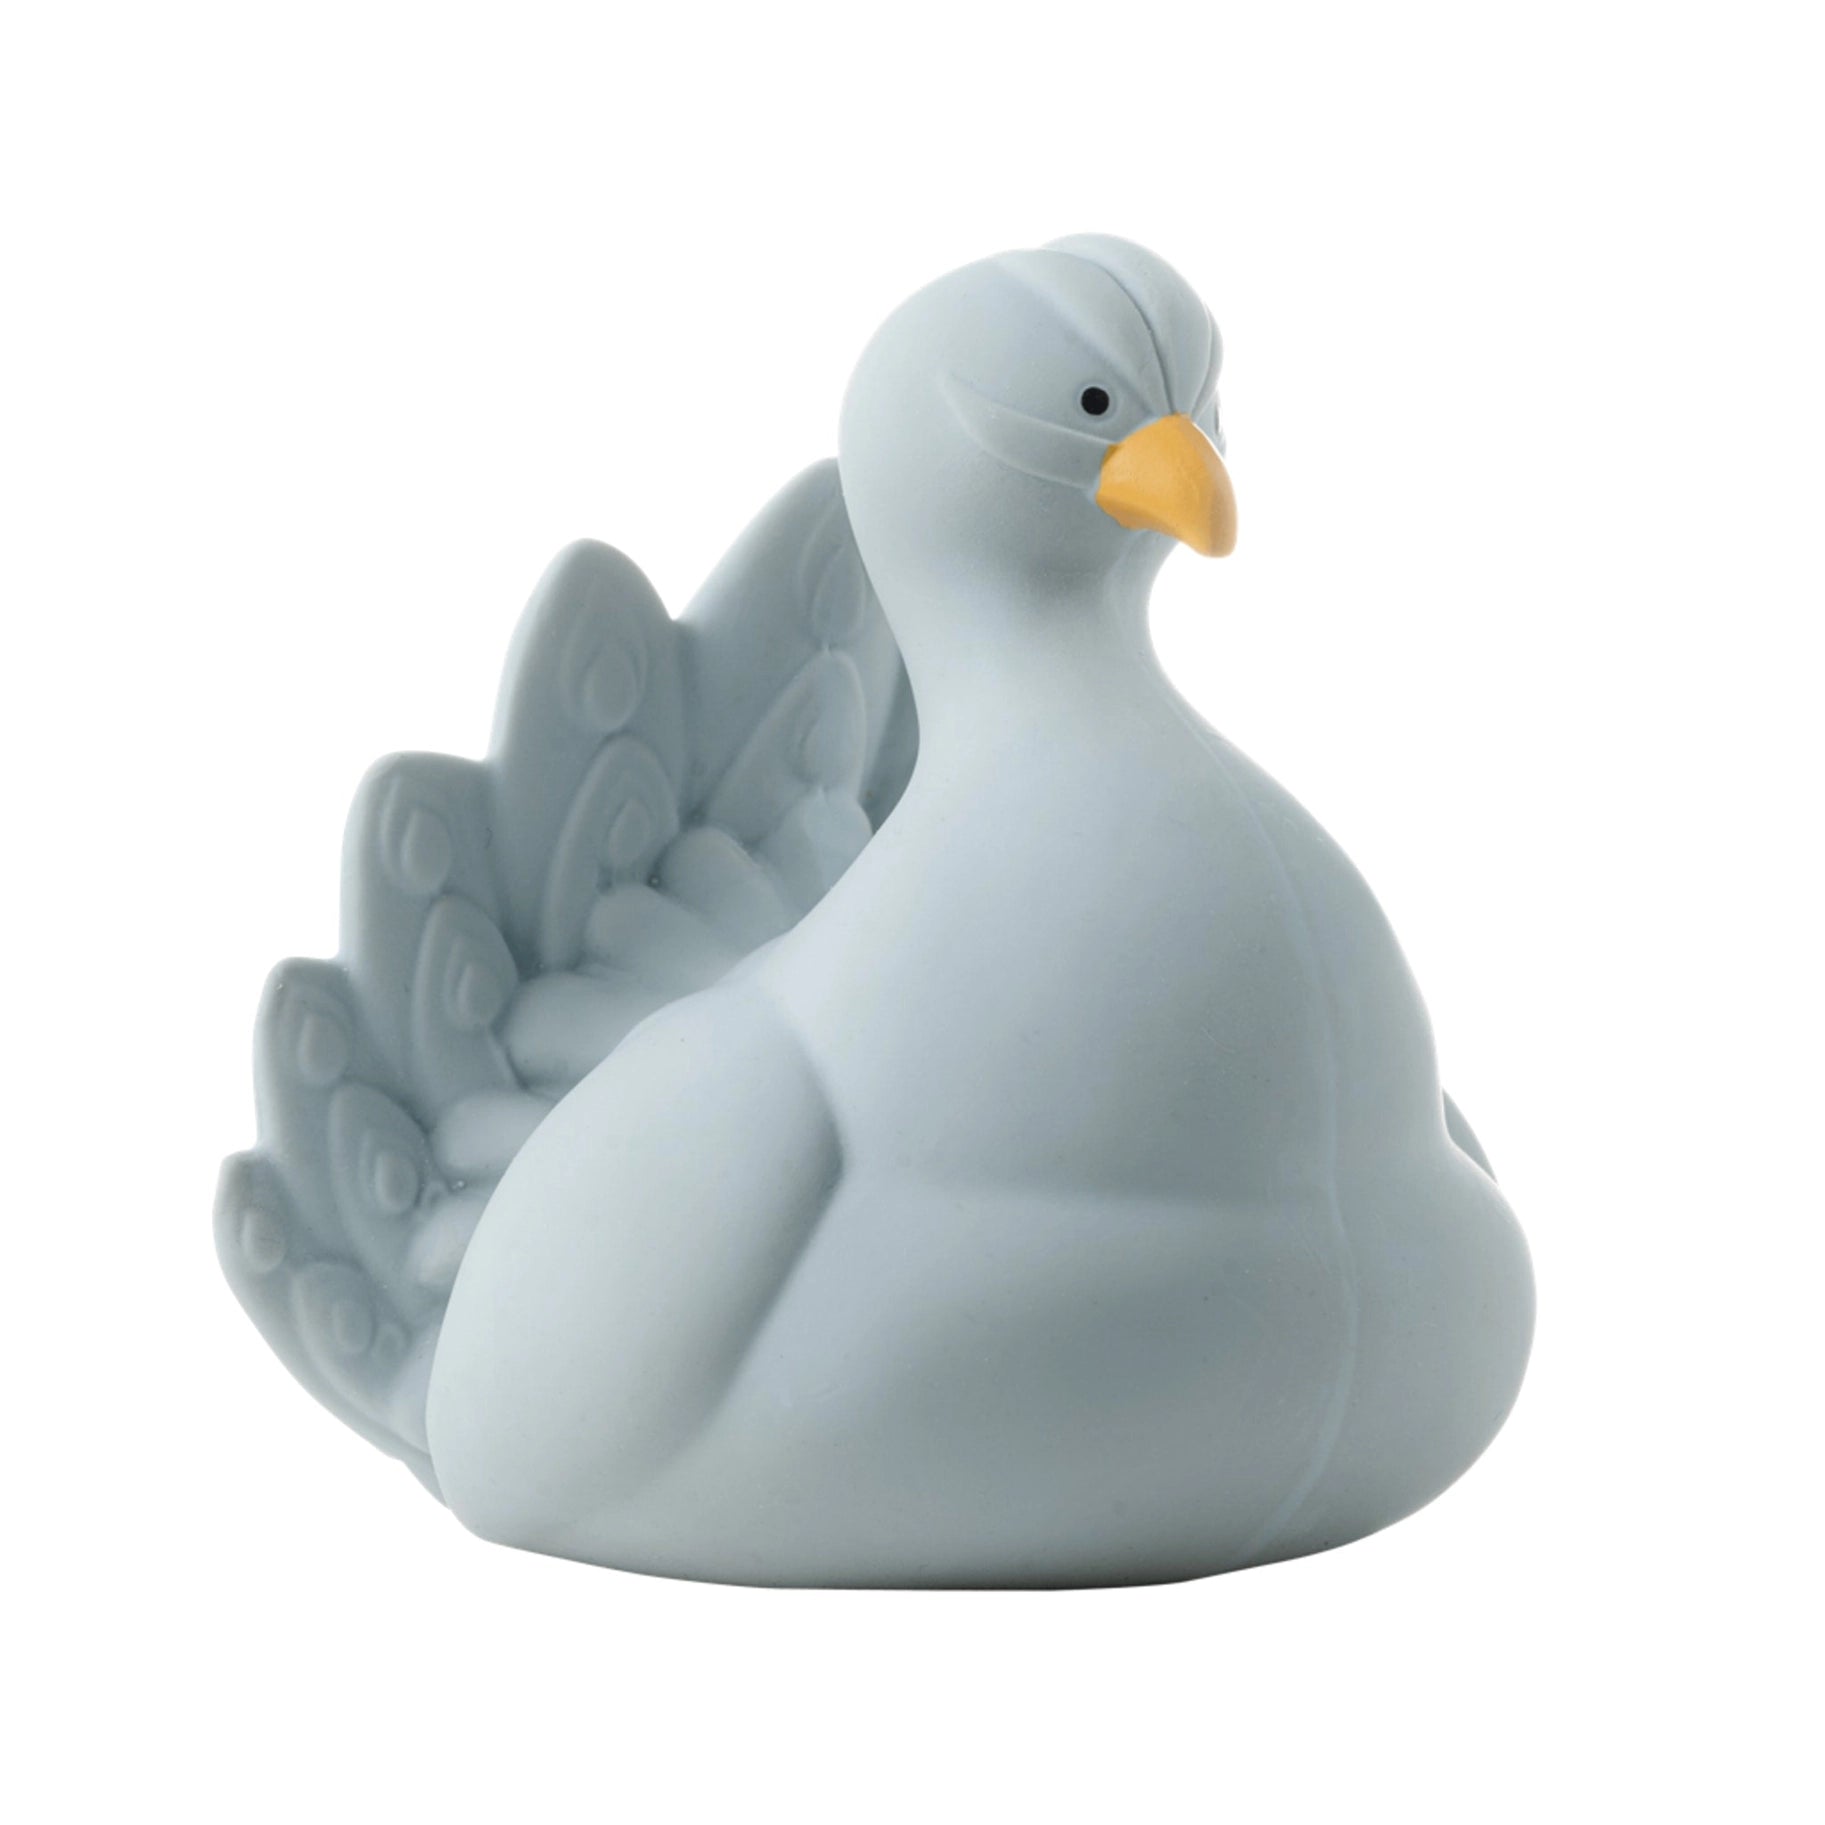 Natruba Peacock Bath Toy - ANB Baby -$20 - $50